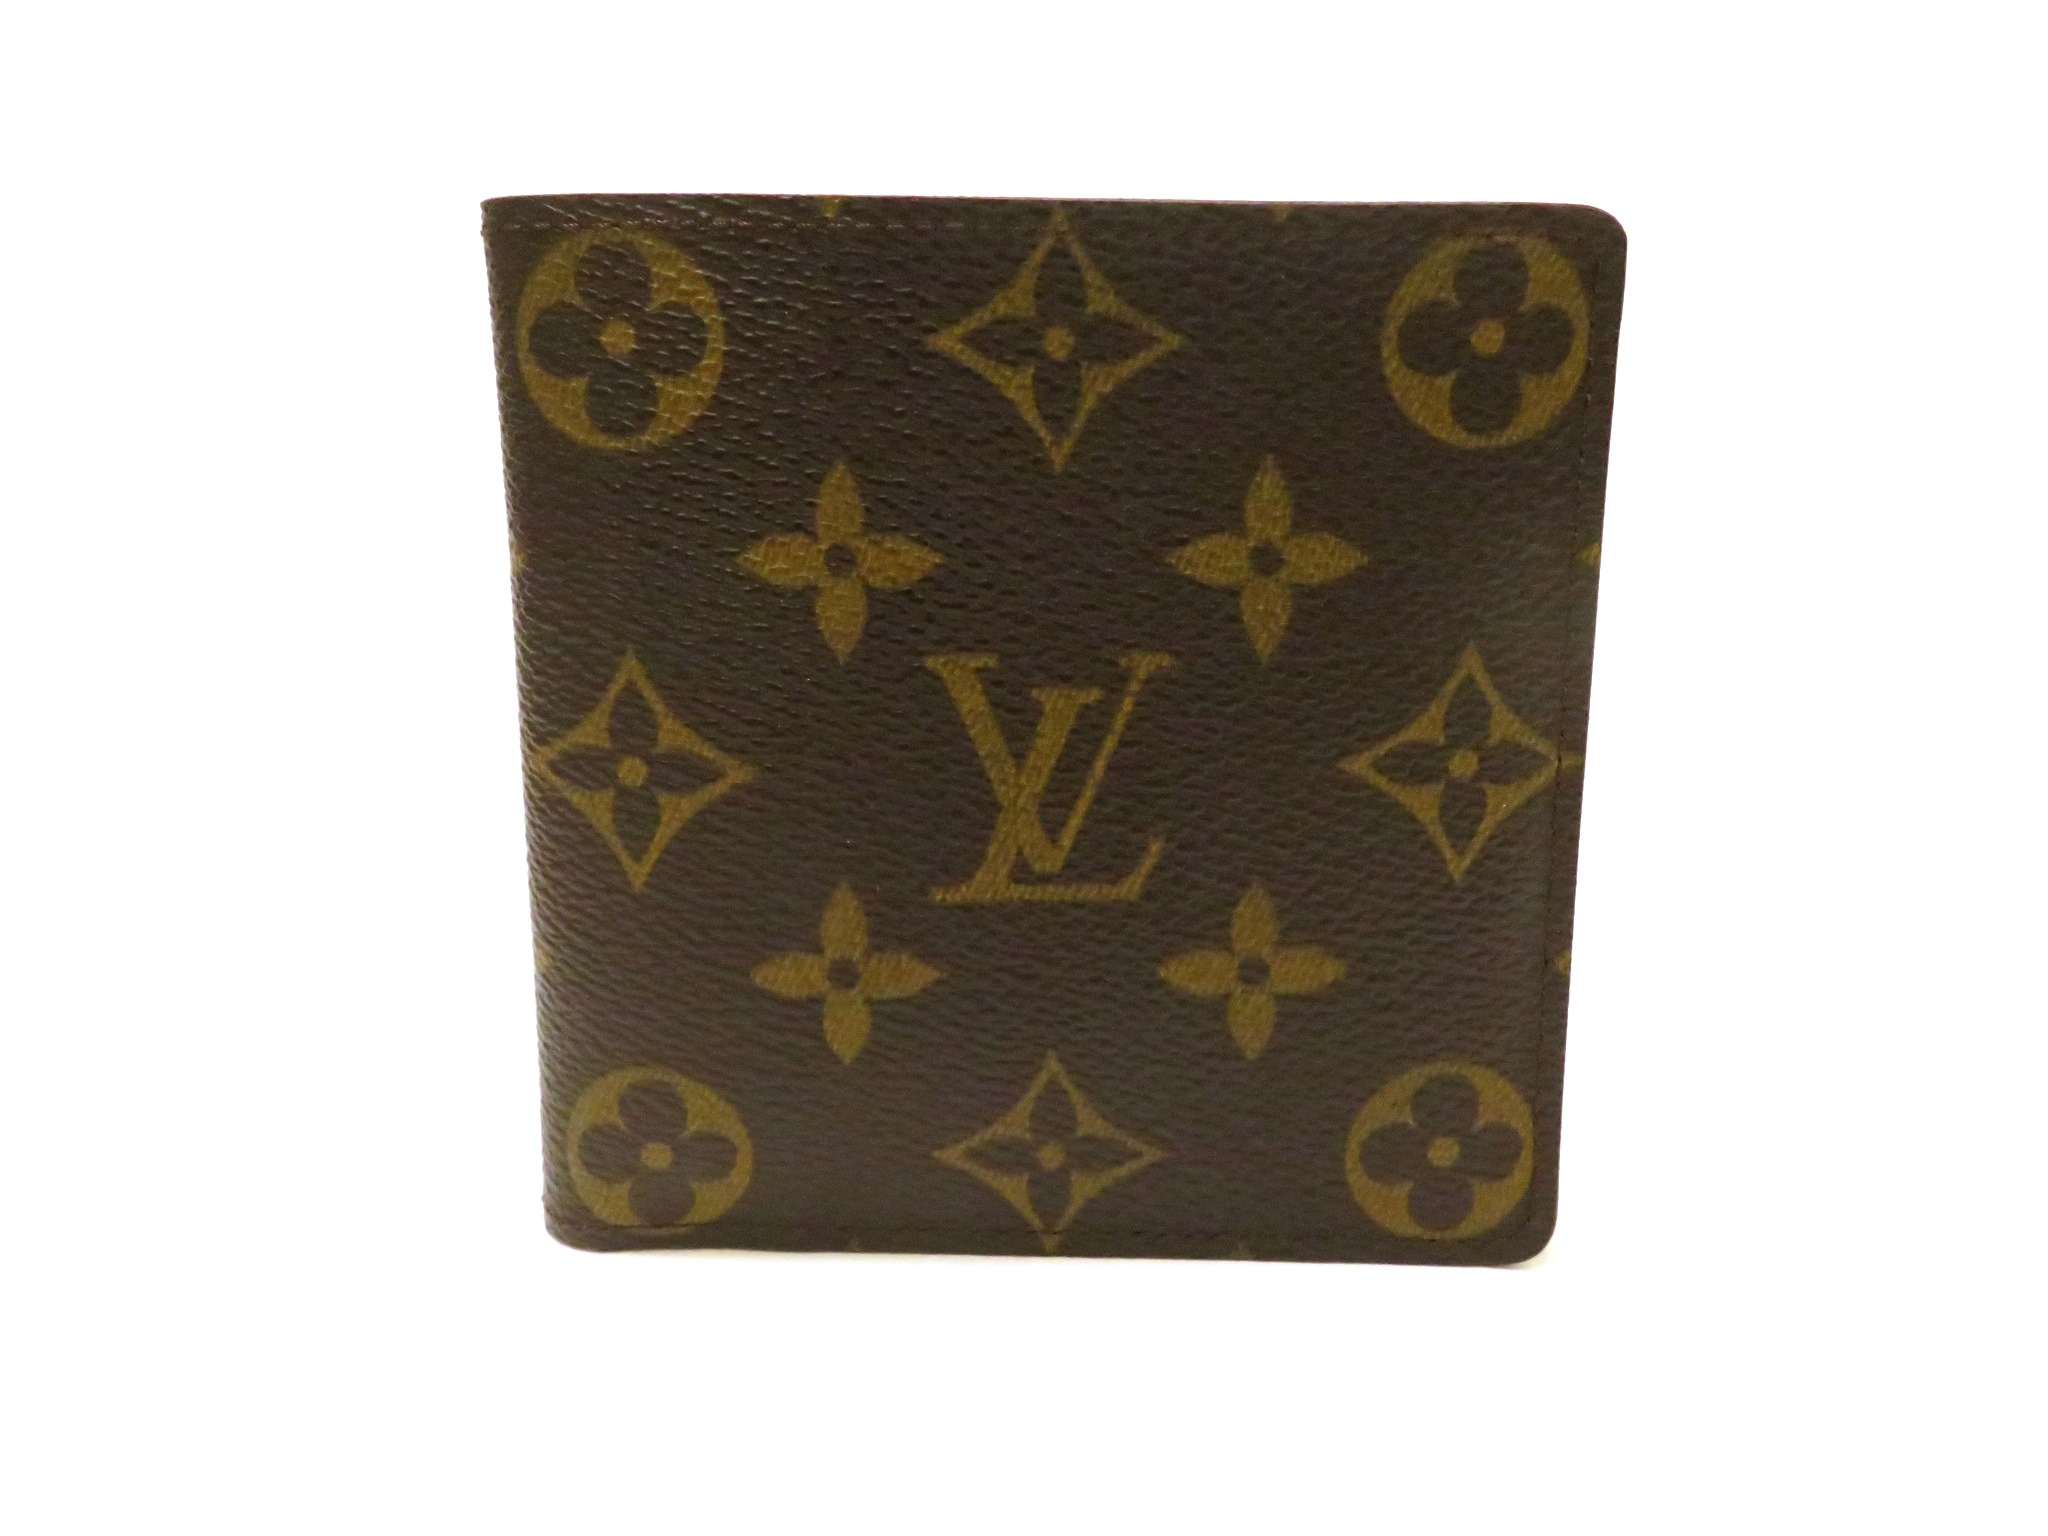 Louis Vuitton ルイヴィトン 財布 メンズ ポルトフォイユマルコ モノグラム 旧型 M 472 My